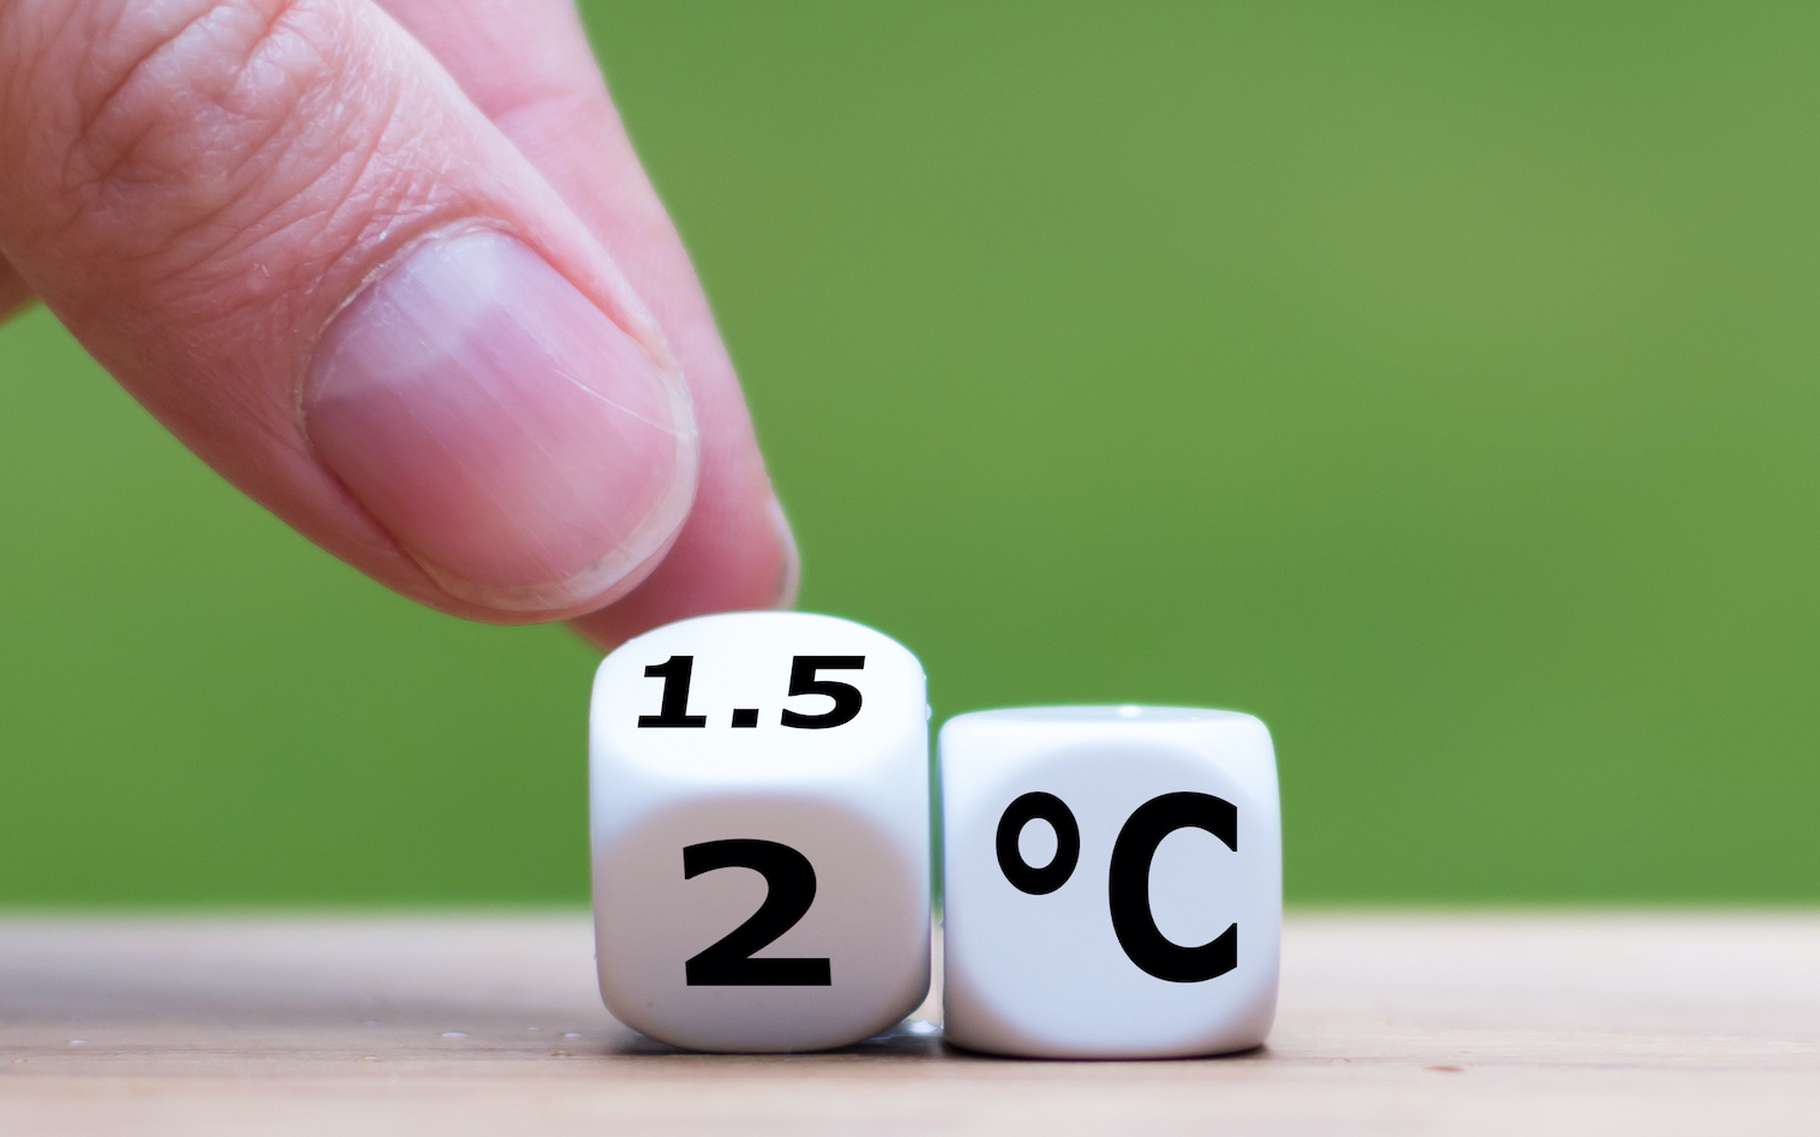 Changement climatique : +0,5 °C de réchauffement, qu’est-ce que cela change ?